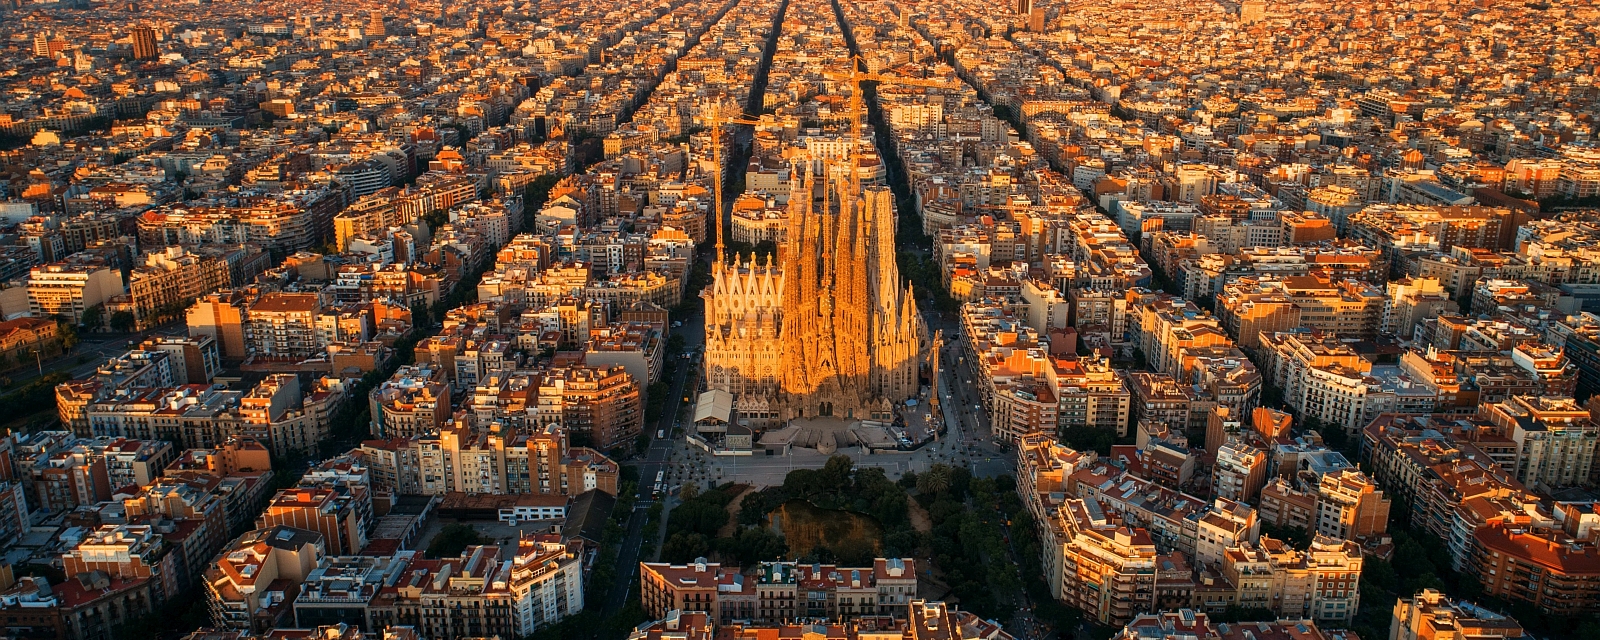 Luftansicht von Barcelona mit Sagrada Familia im Fokus